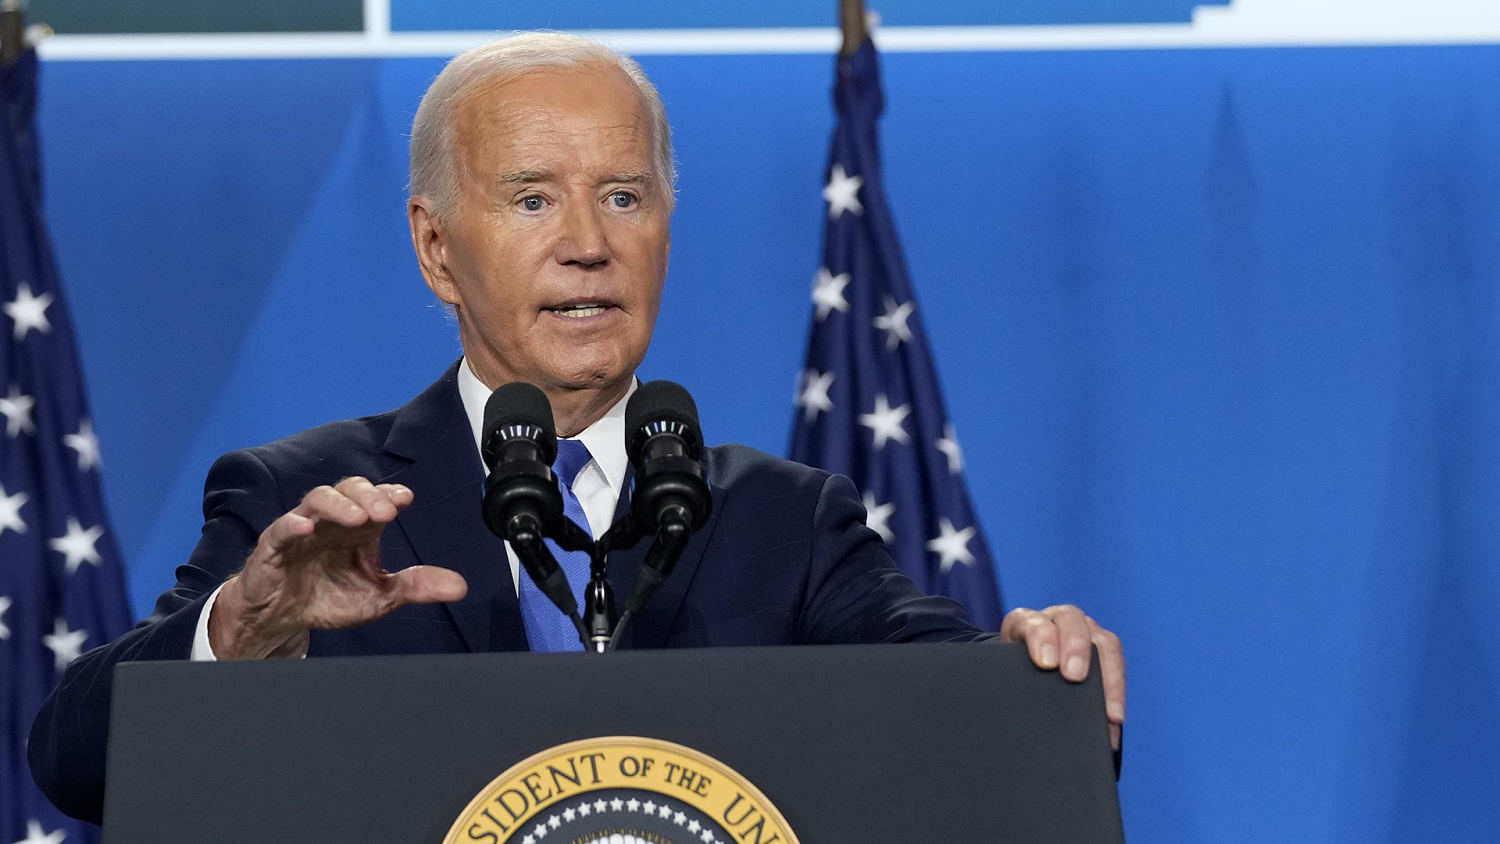 Biden asked about 2020 ‘bridge candidate’ remarks